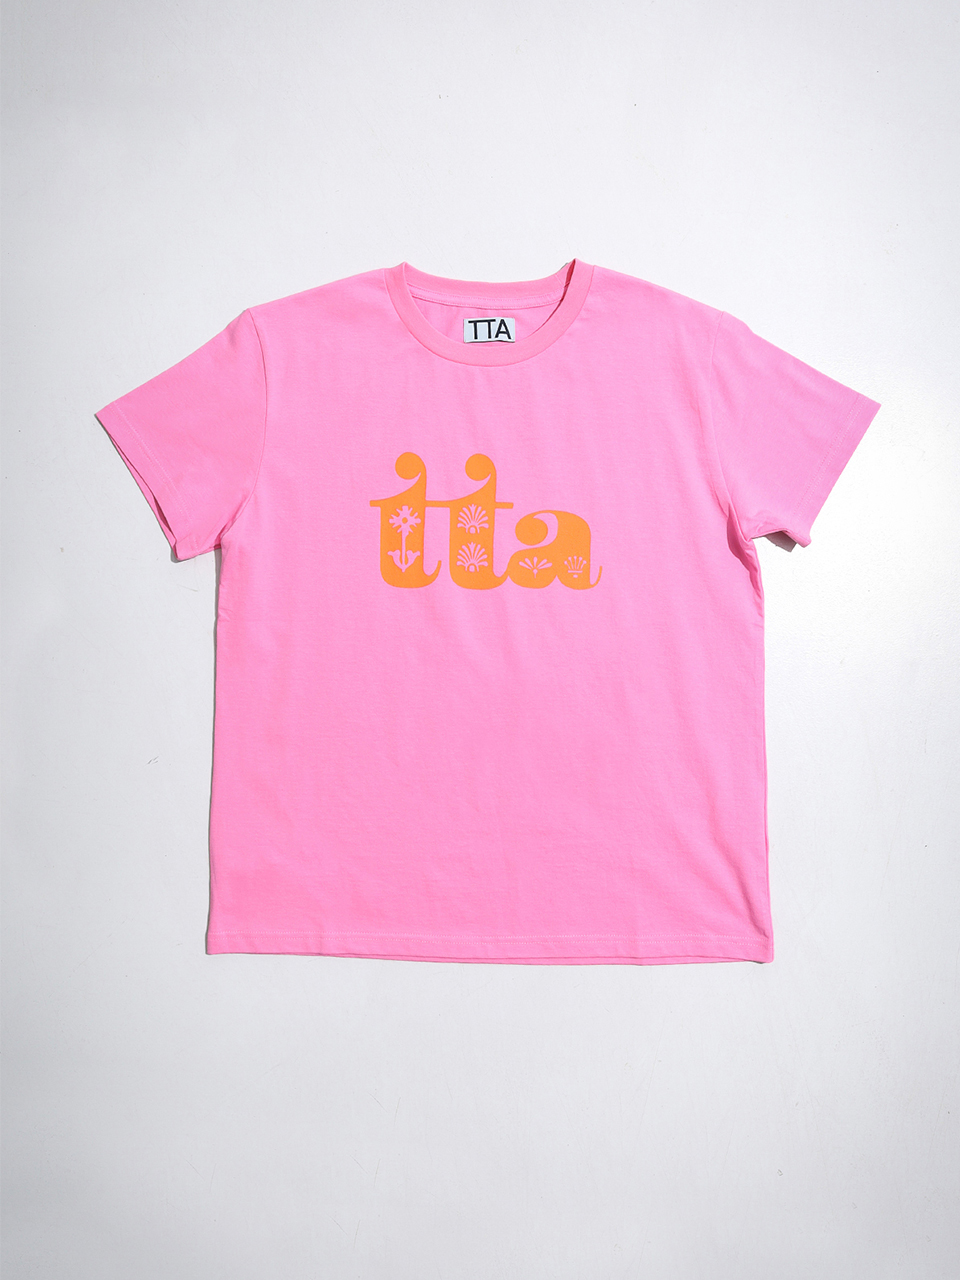 TTA Garden S/S Tshirts-Geek Pink